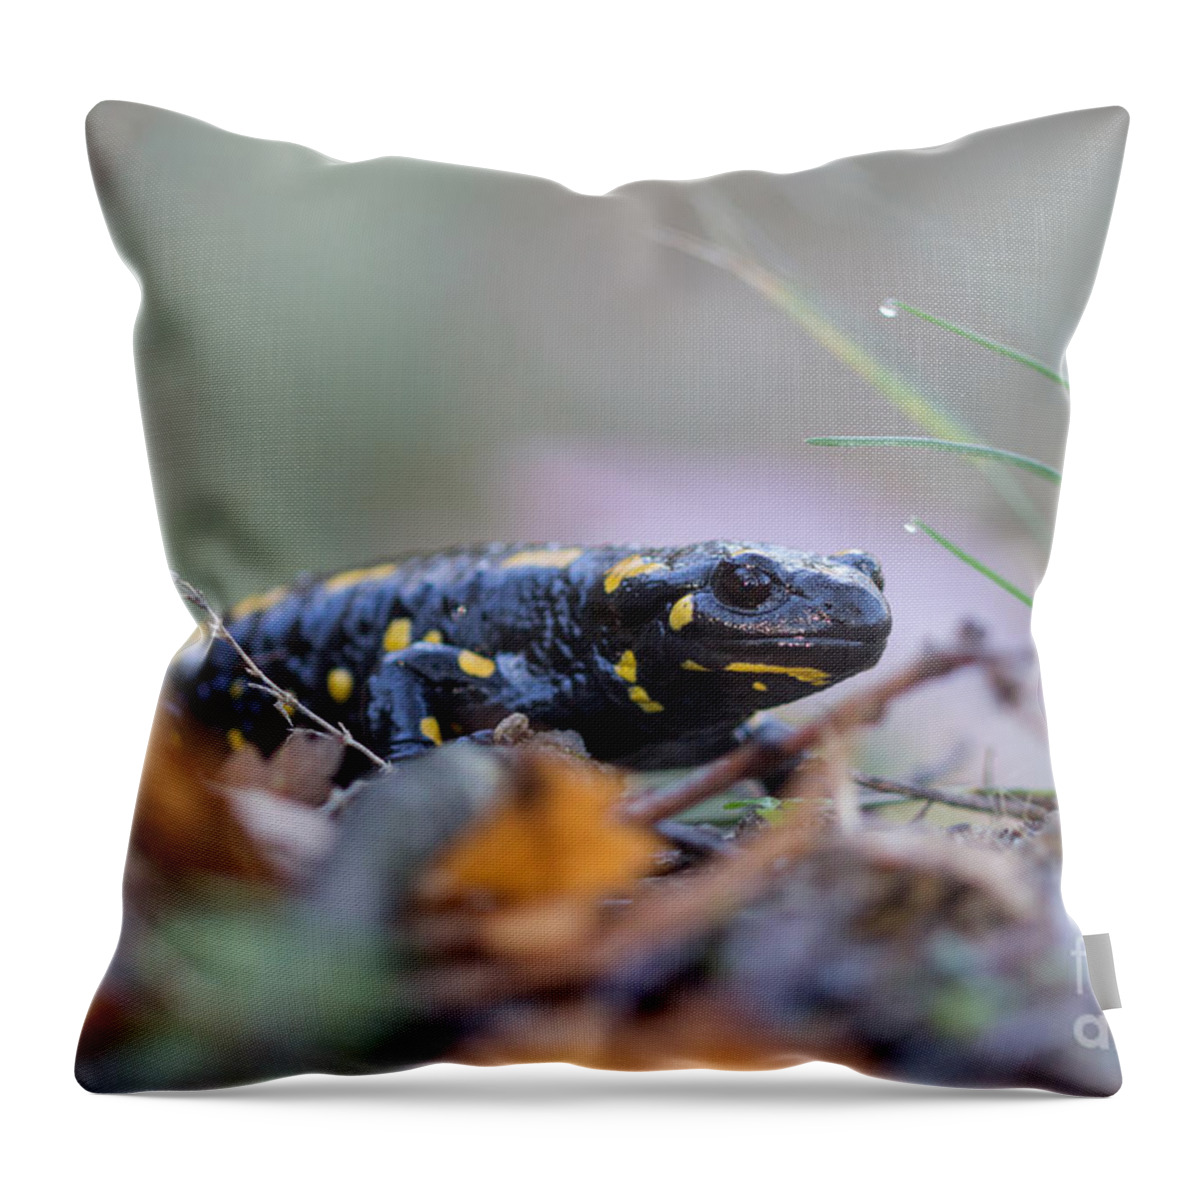 Animals Throw Pillow featuring the photograph Fire Salamander - Salamandra salamandra #2 by Jivko Nakev